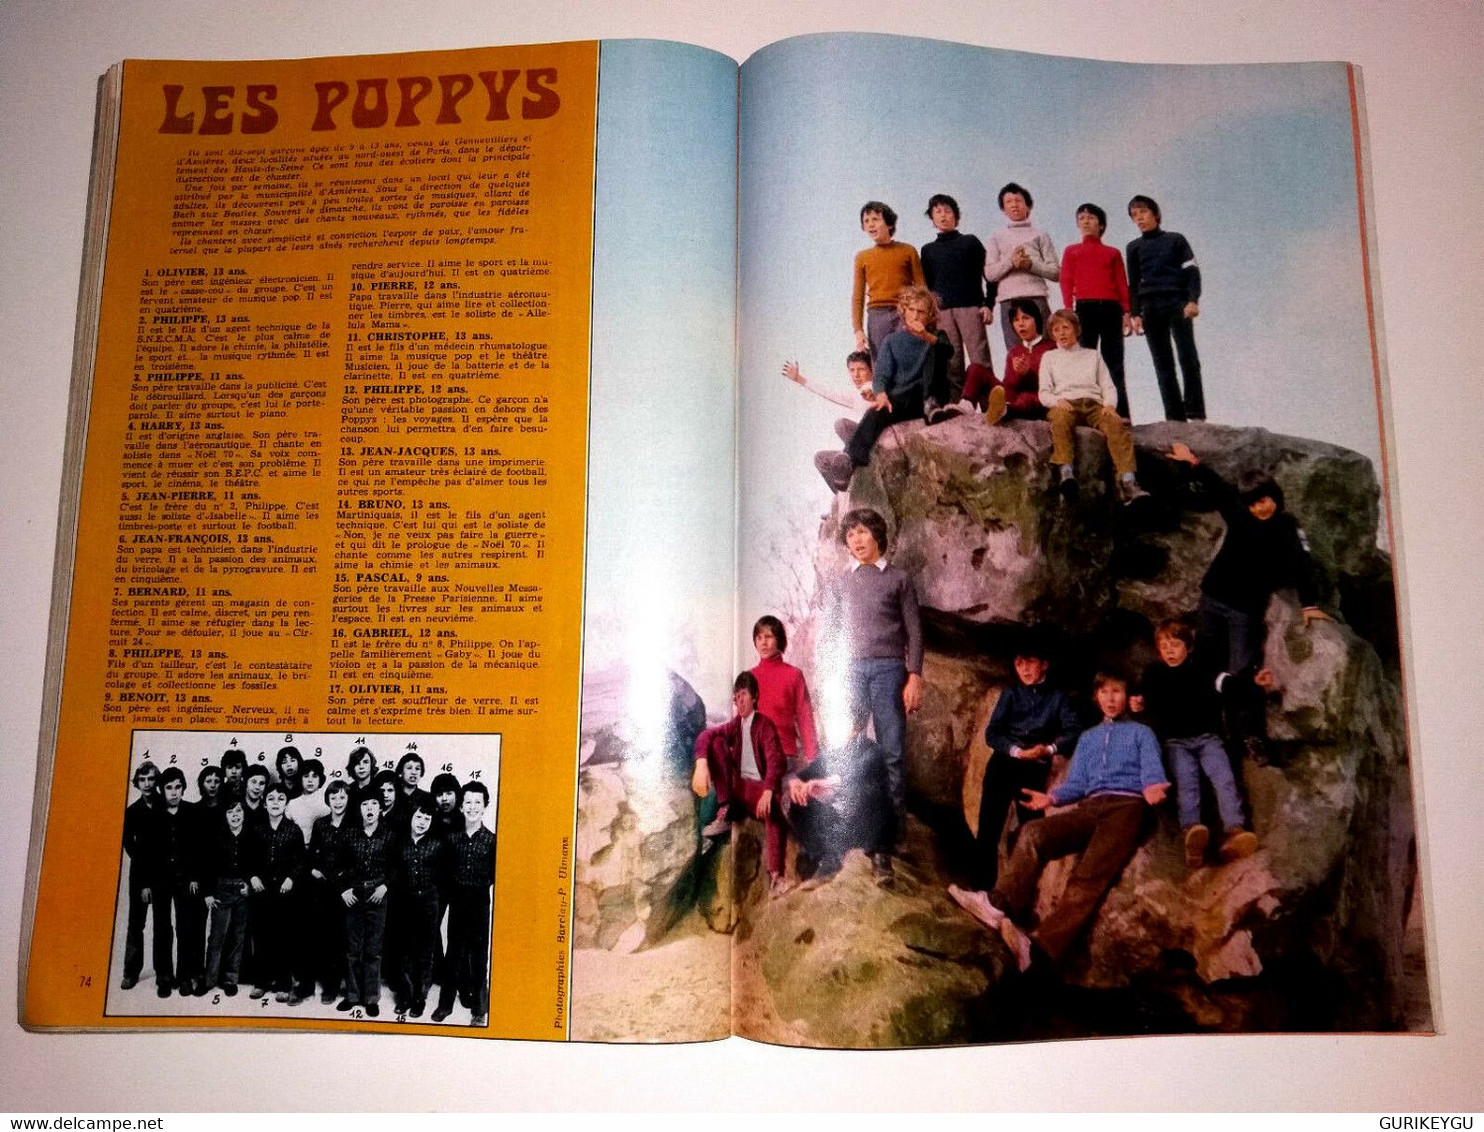 15 ANS FILLETTE N° 77 AGGIE ANNIE LILI Jeu De L'oie Les POPPYS Dolly Pops 2-1972 - Lili L'Espiègle